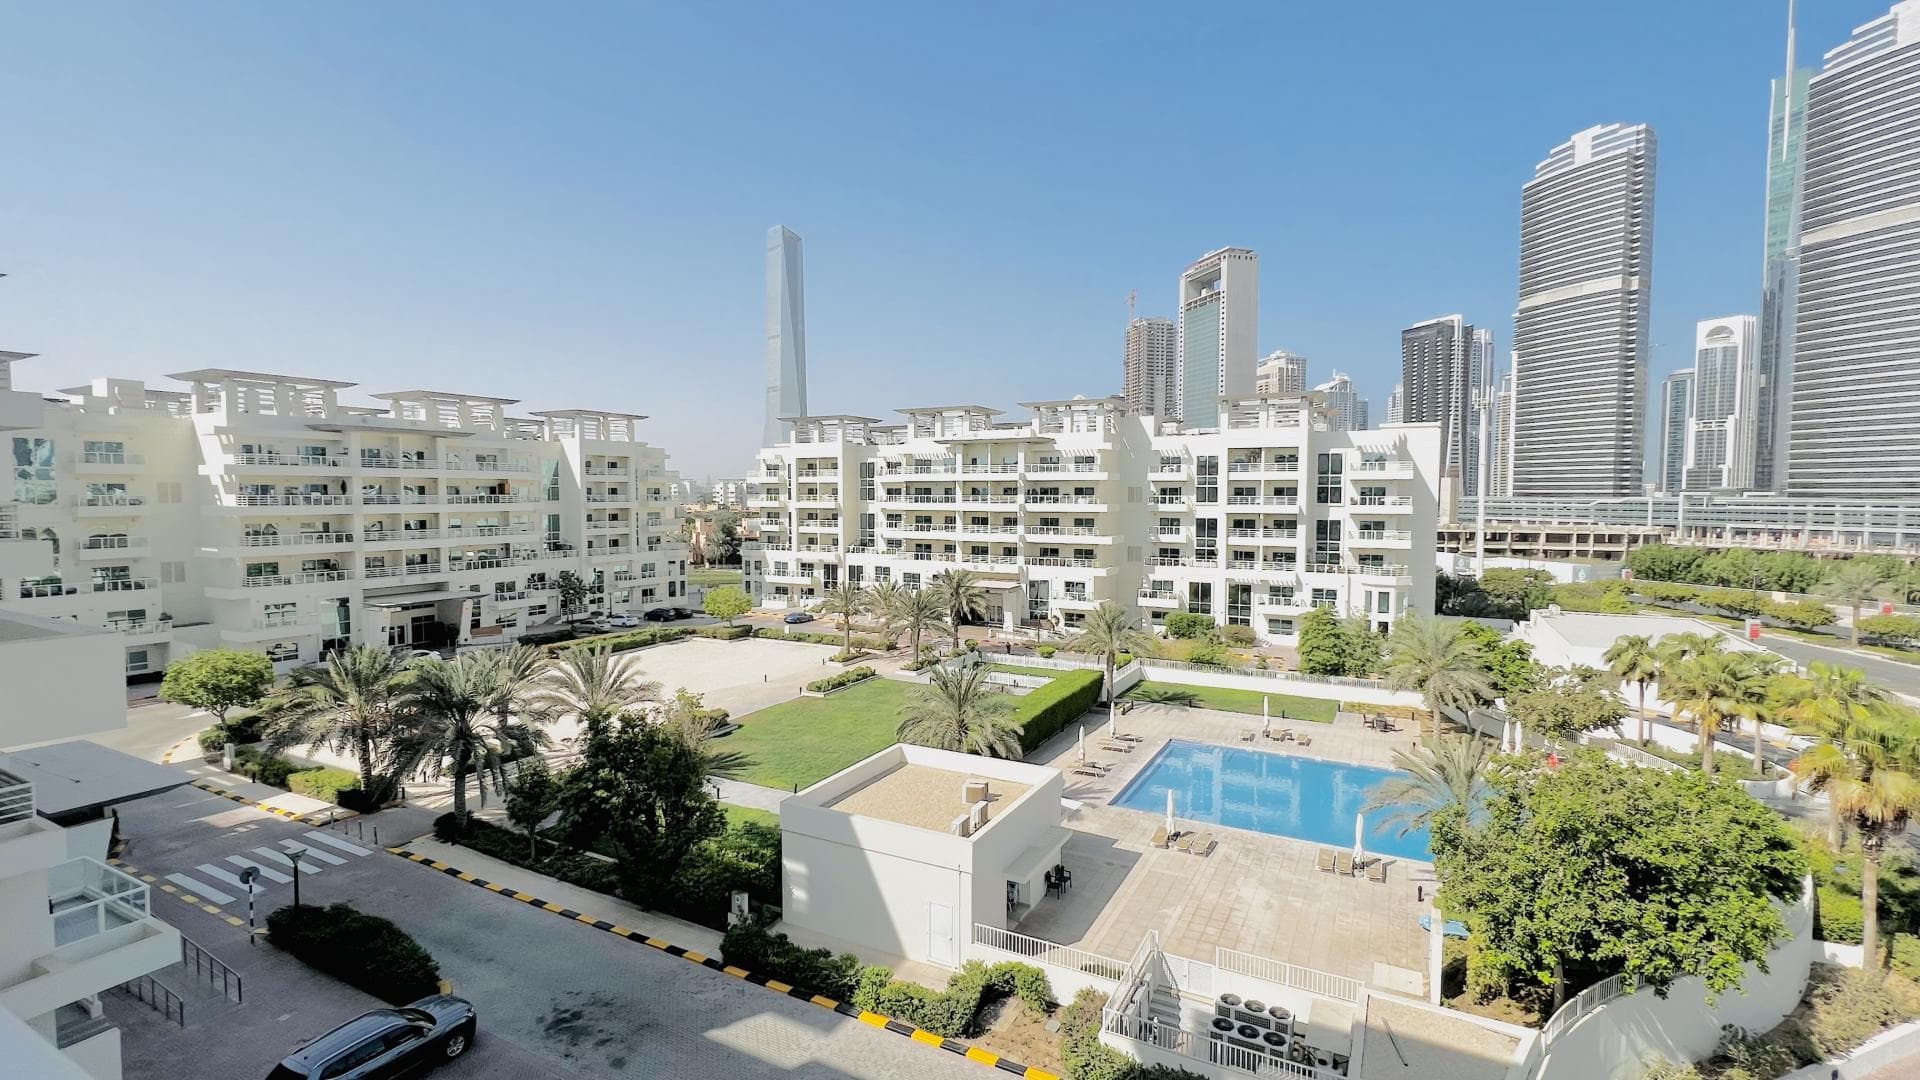 3 Bedroom Apartment For Rent Al Fahad Tower 2 Lp38566 Fa1247a1aa69780.jpg